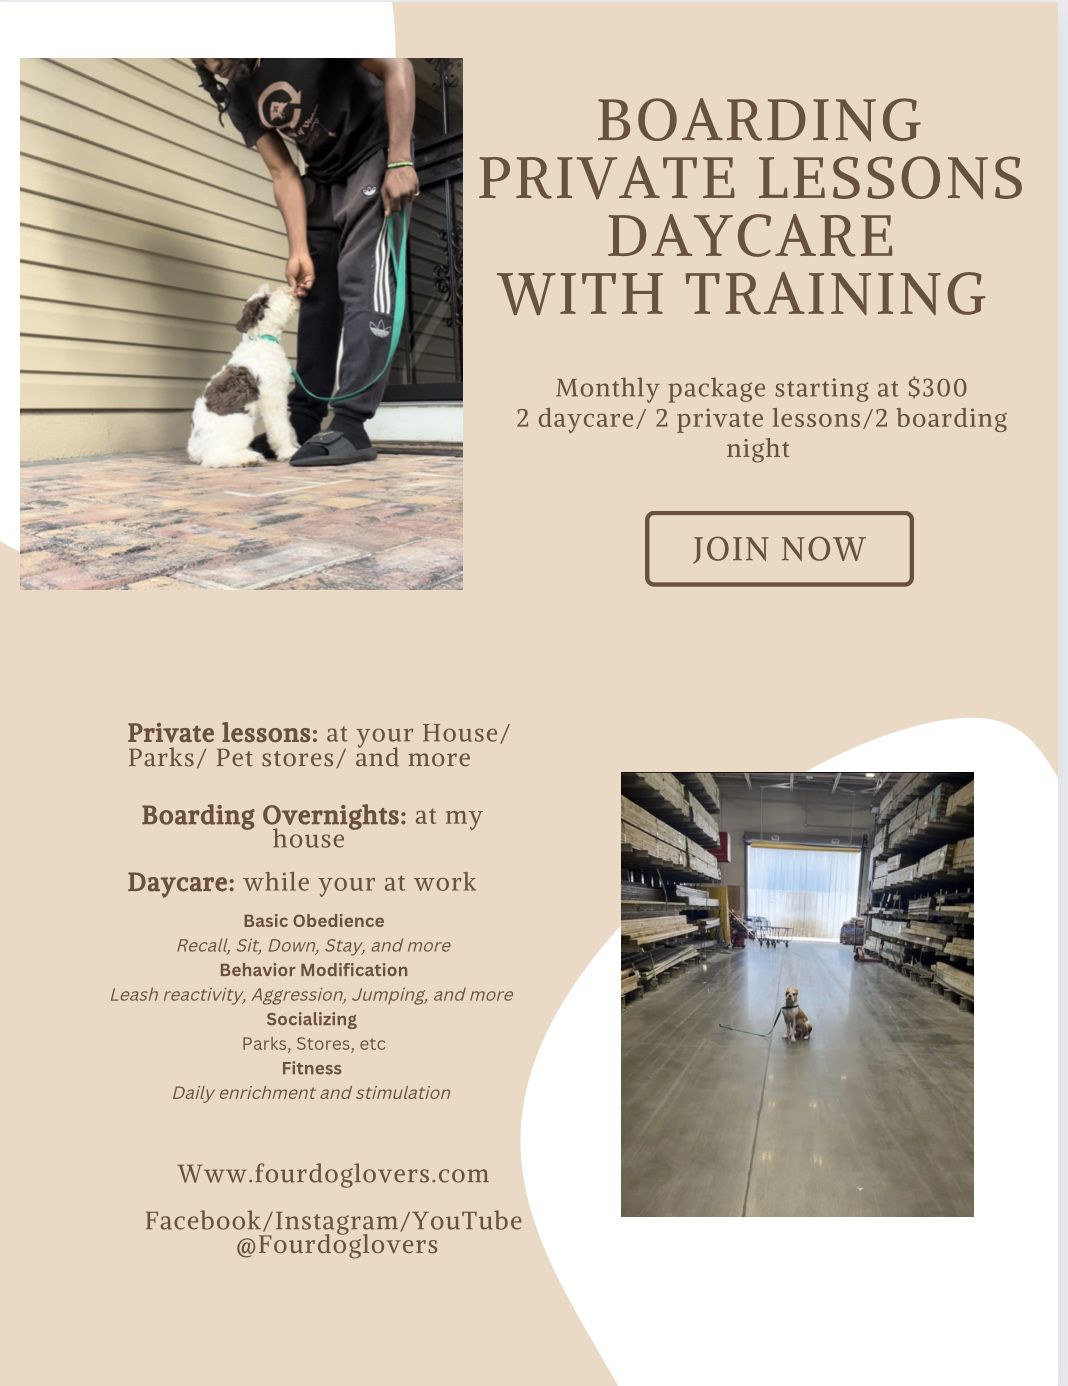 Doggie Daycare/ Board To Train/ Private Lessons 